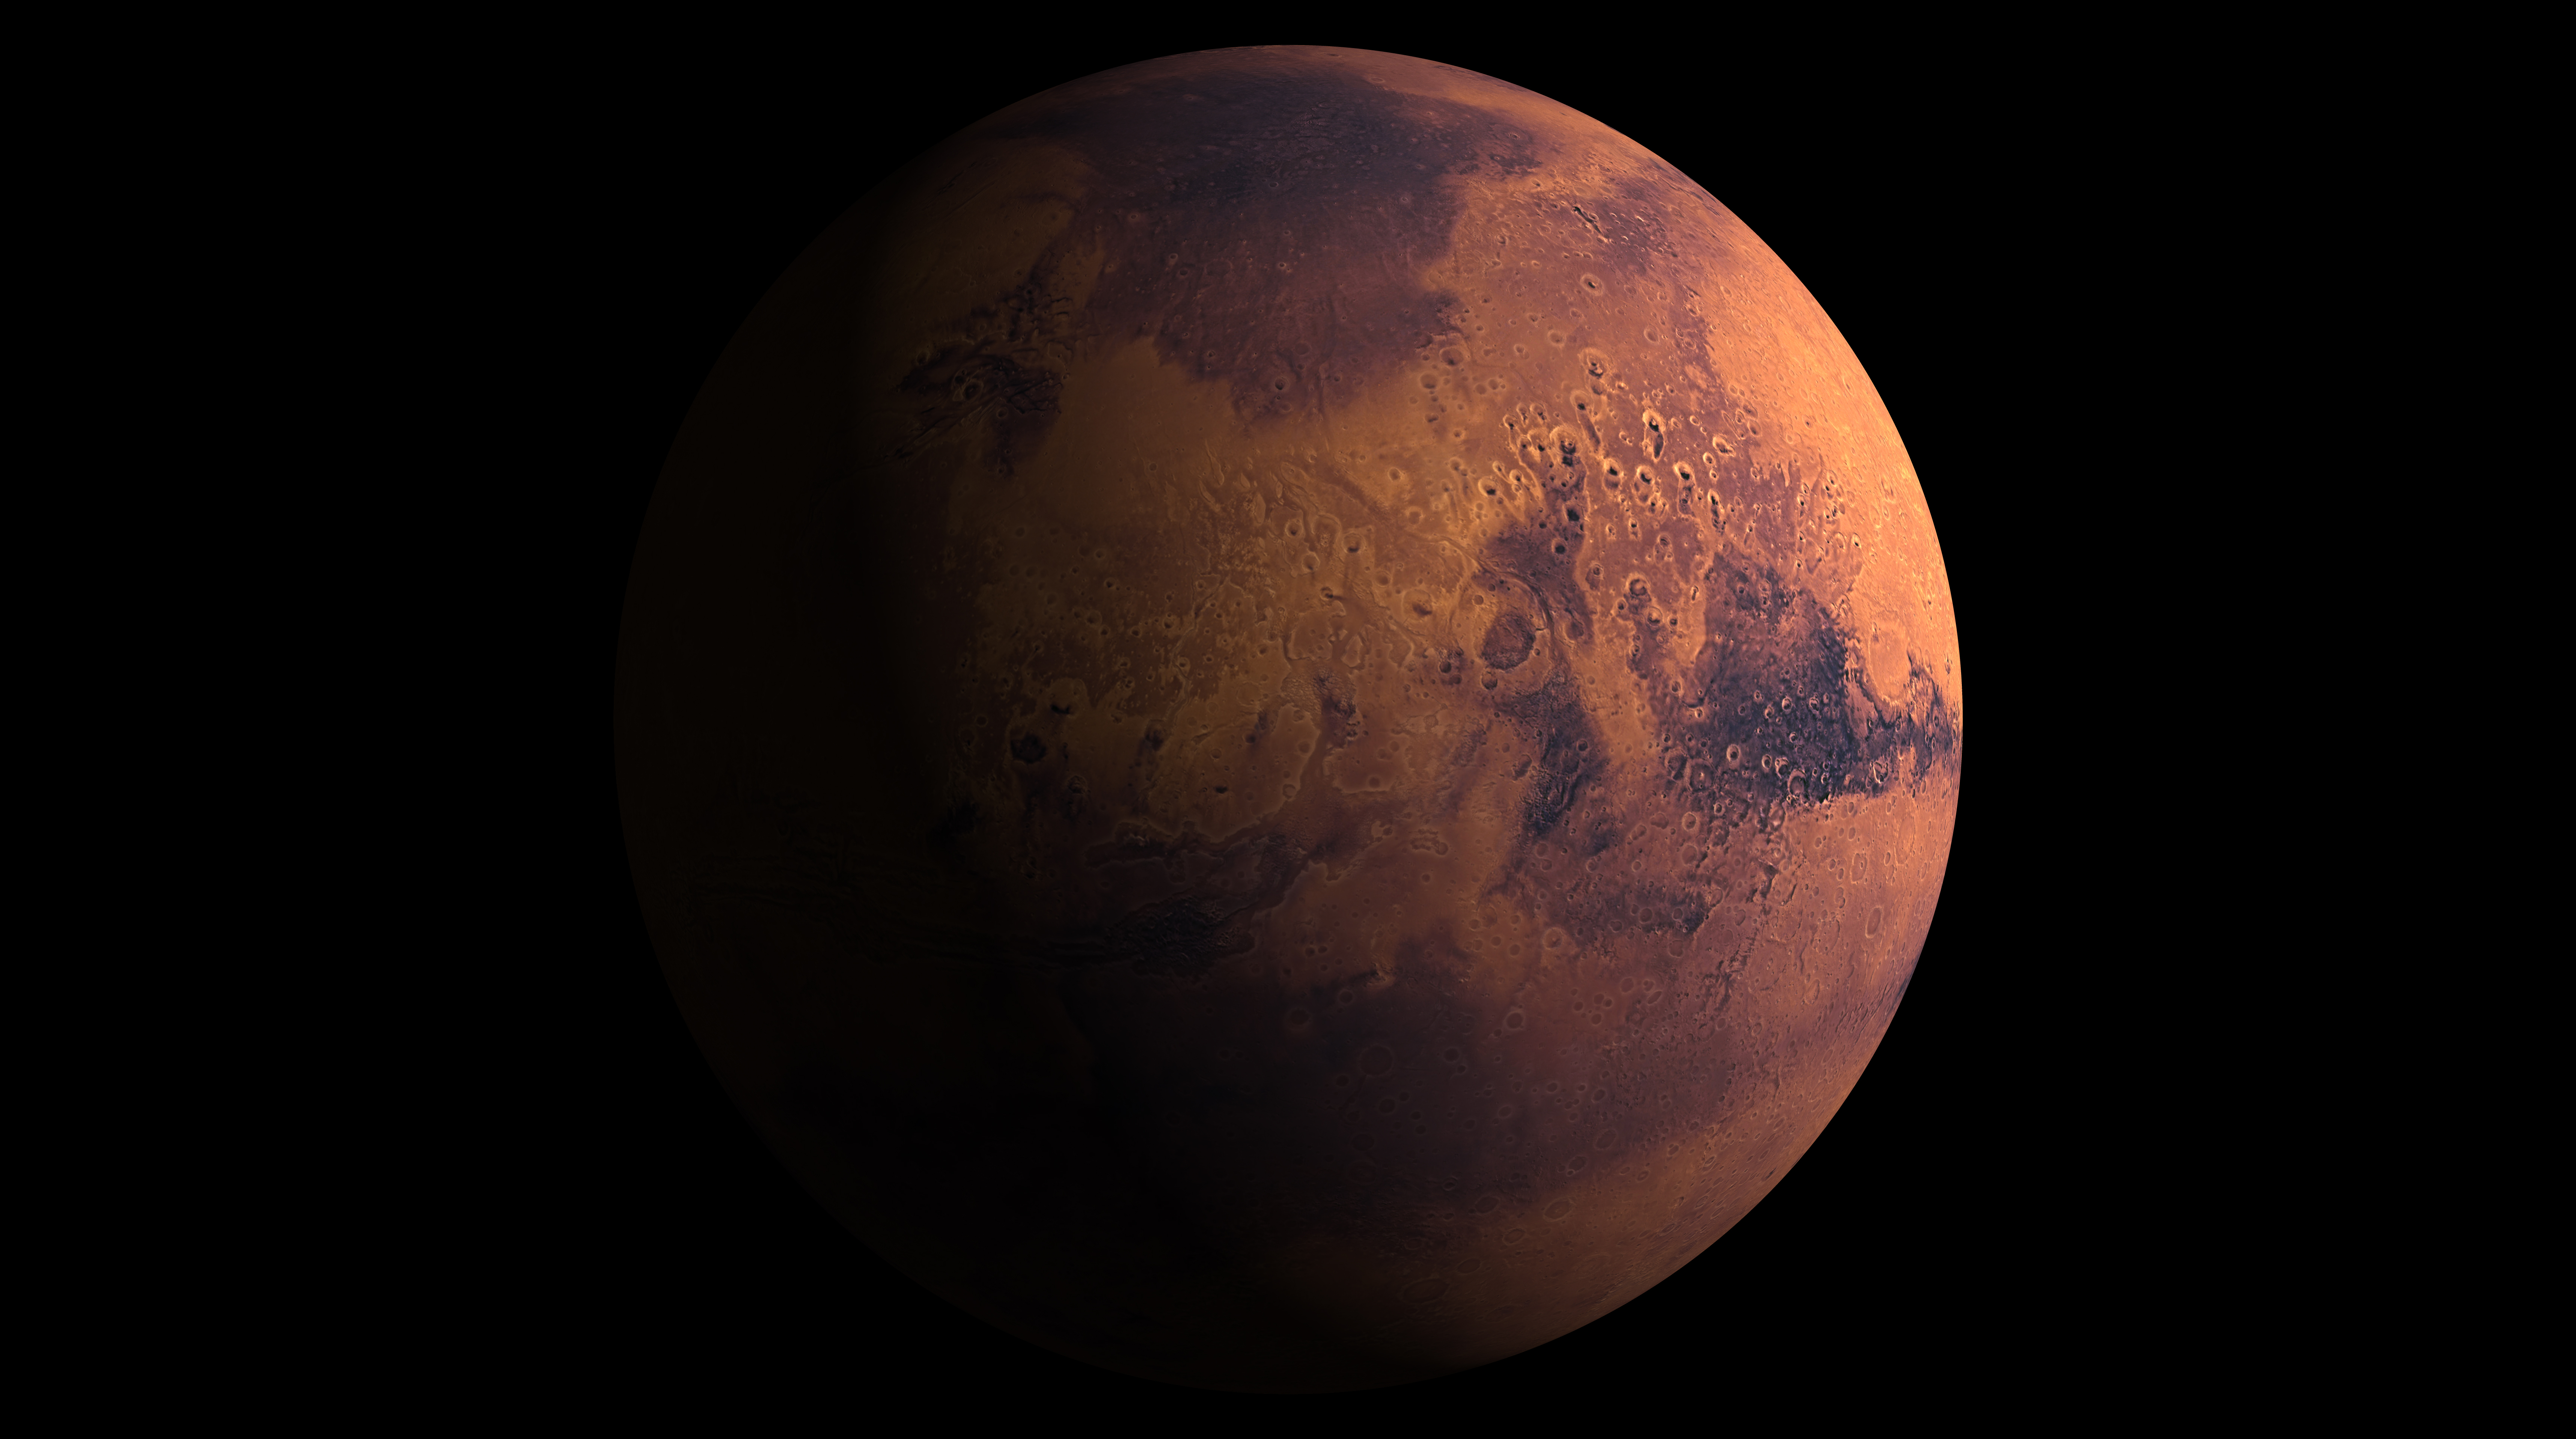 <p><strong>6 януари &ndash; Марс преминава в Телец</strong></p>

<p>Марс е много силна планета, надарена с агресия и негативизъм, особено в знак като Телец. Най-опасният ден ще бъде първият ден от престоя на планетата в този знак. Преходът ще бъде доста труден, преструктурирането на енергийния сектор ще се случи бързо и драстично. Възможно е на този ден почиващите да имат тревожни мисли за работа, бизнес и проблеми. Хората около тях могат да станат безкомпромисни и упорити, особено ако Марс управлява зодията им.<br />
&nbsp;</p>